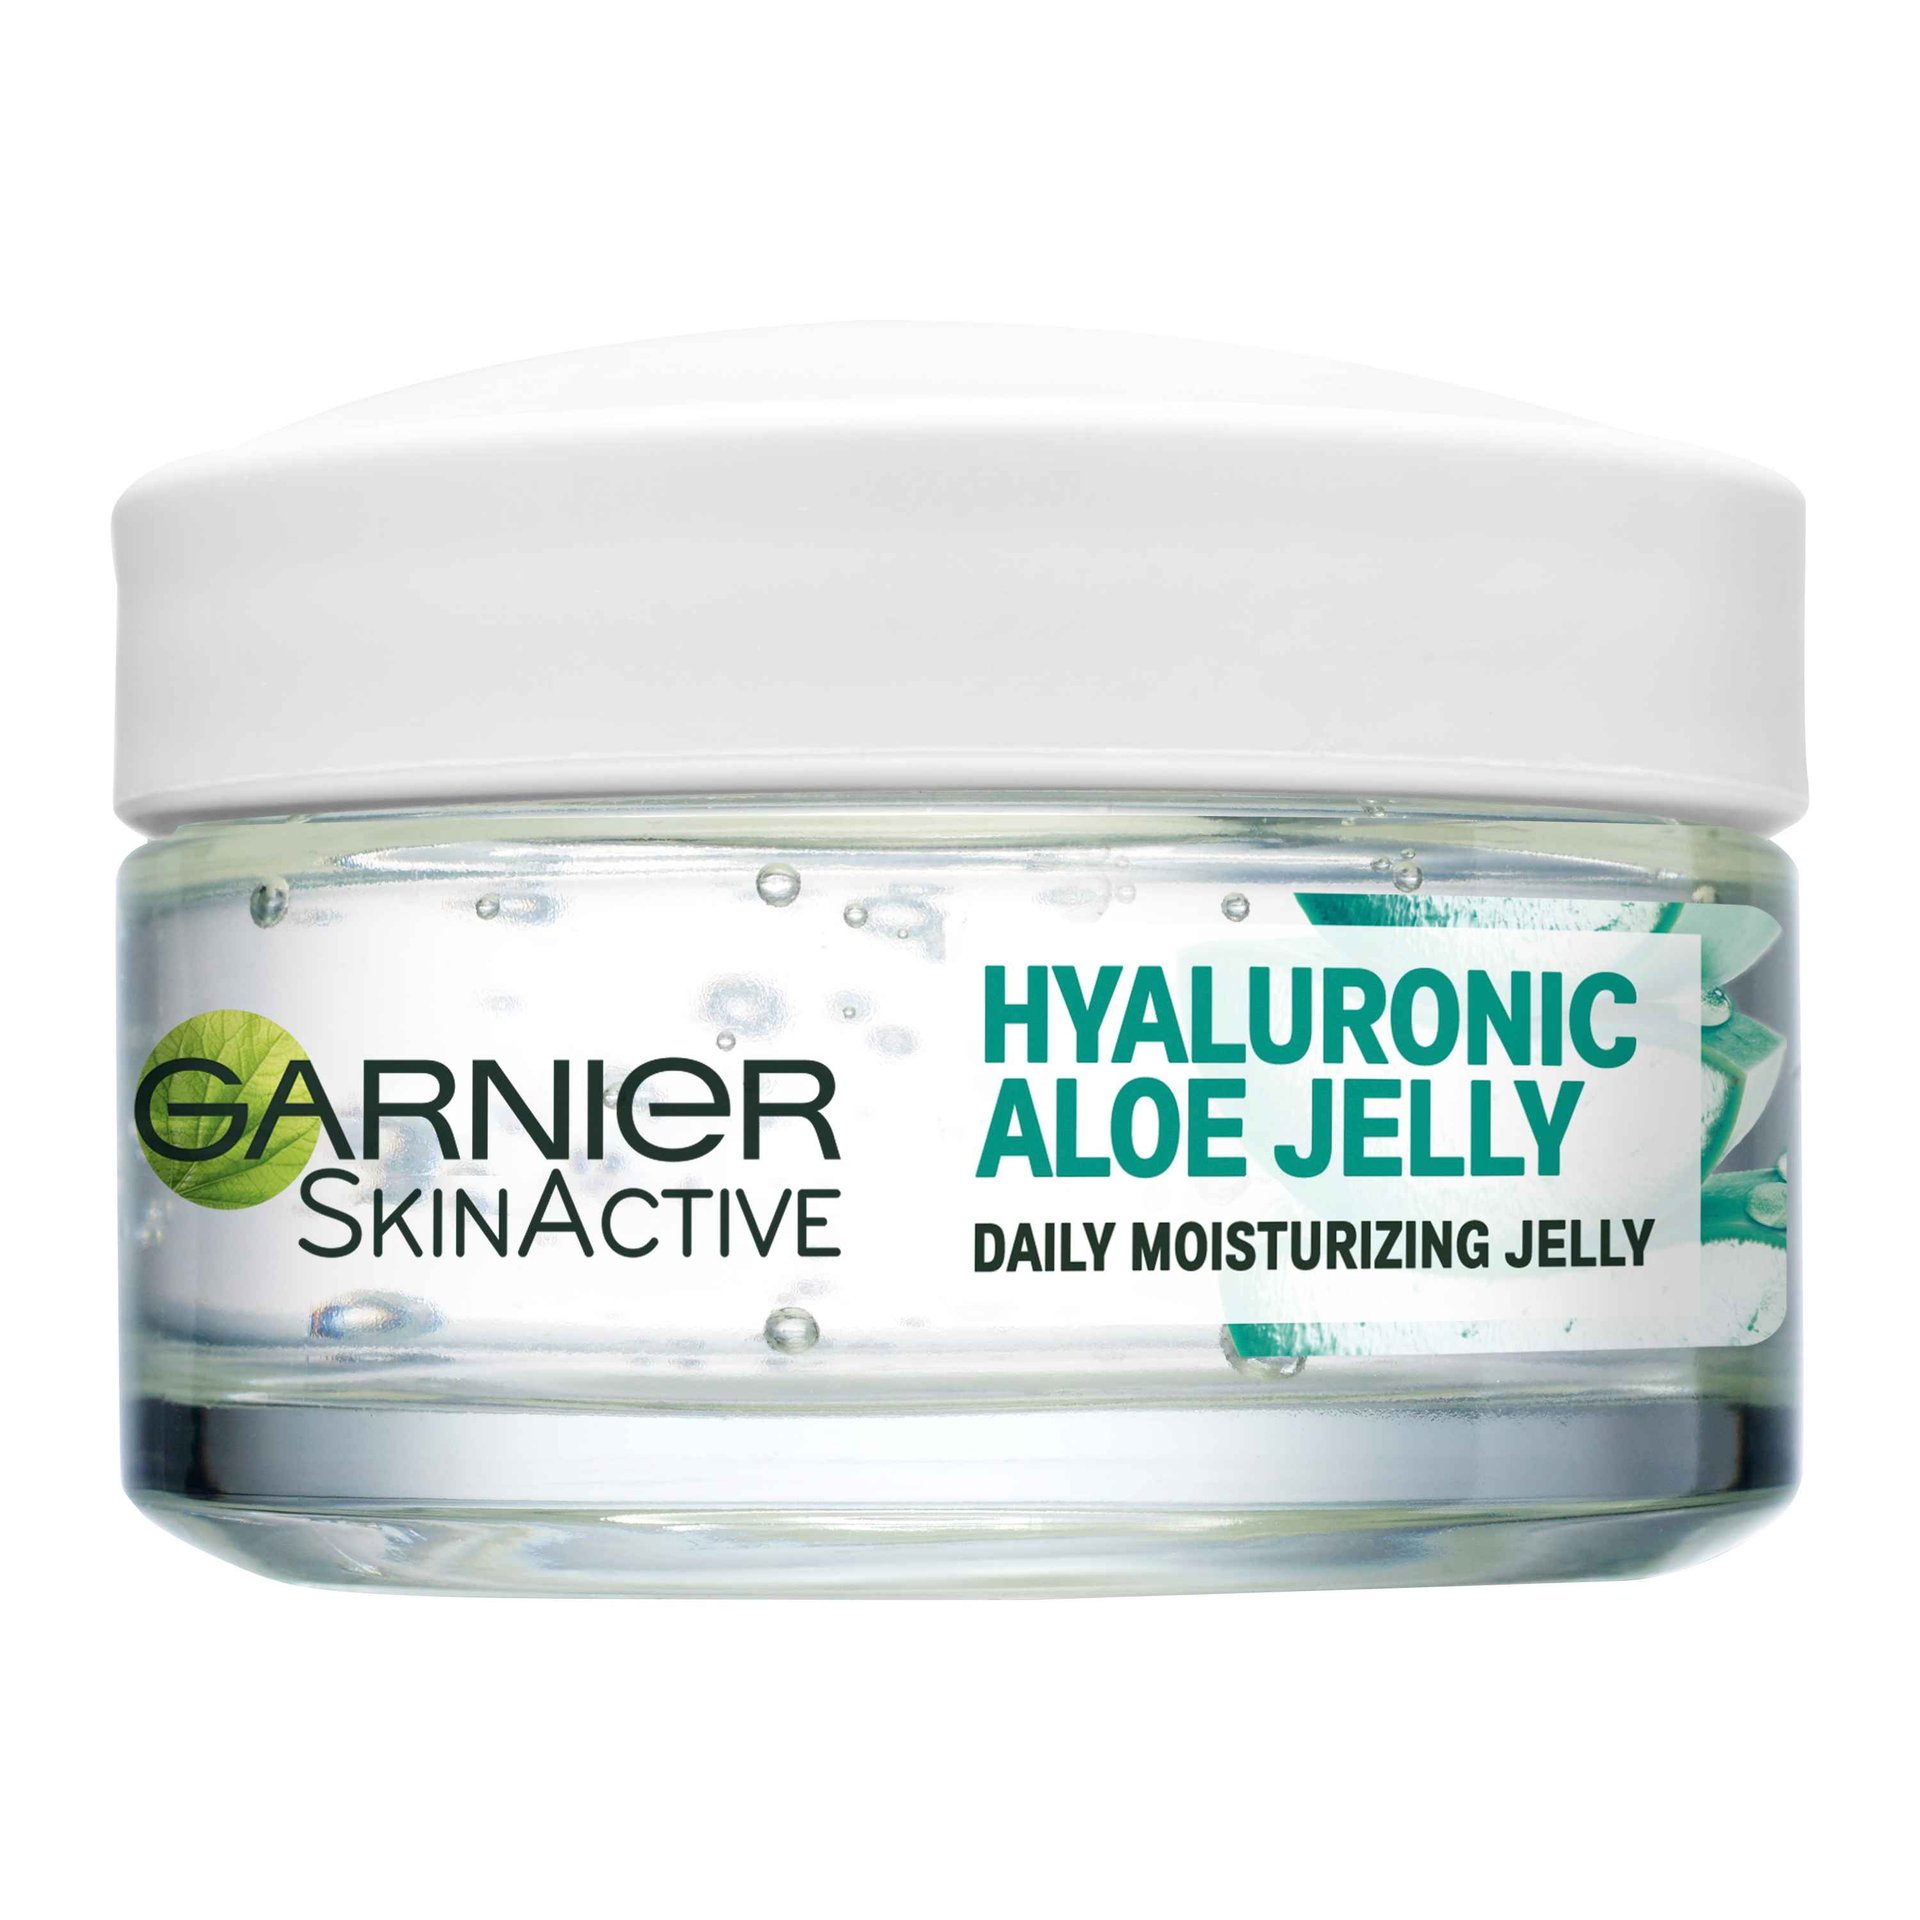 Hyaluronic Aloe Jelly